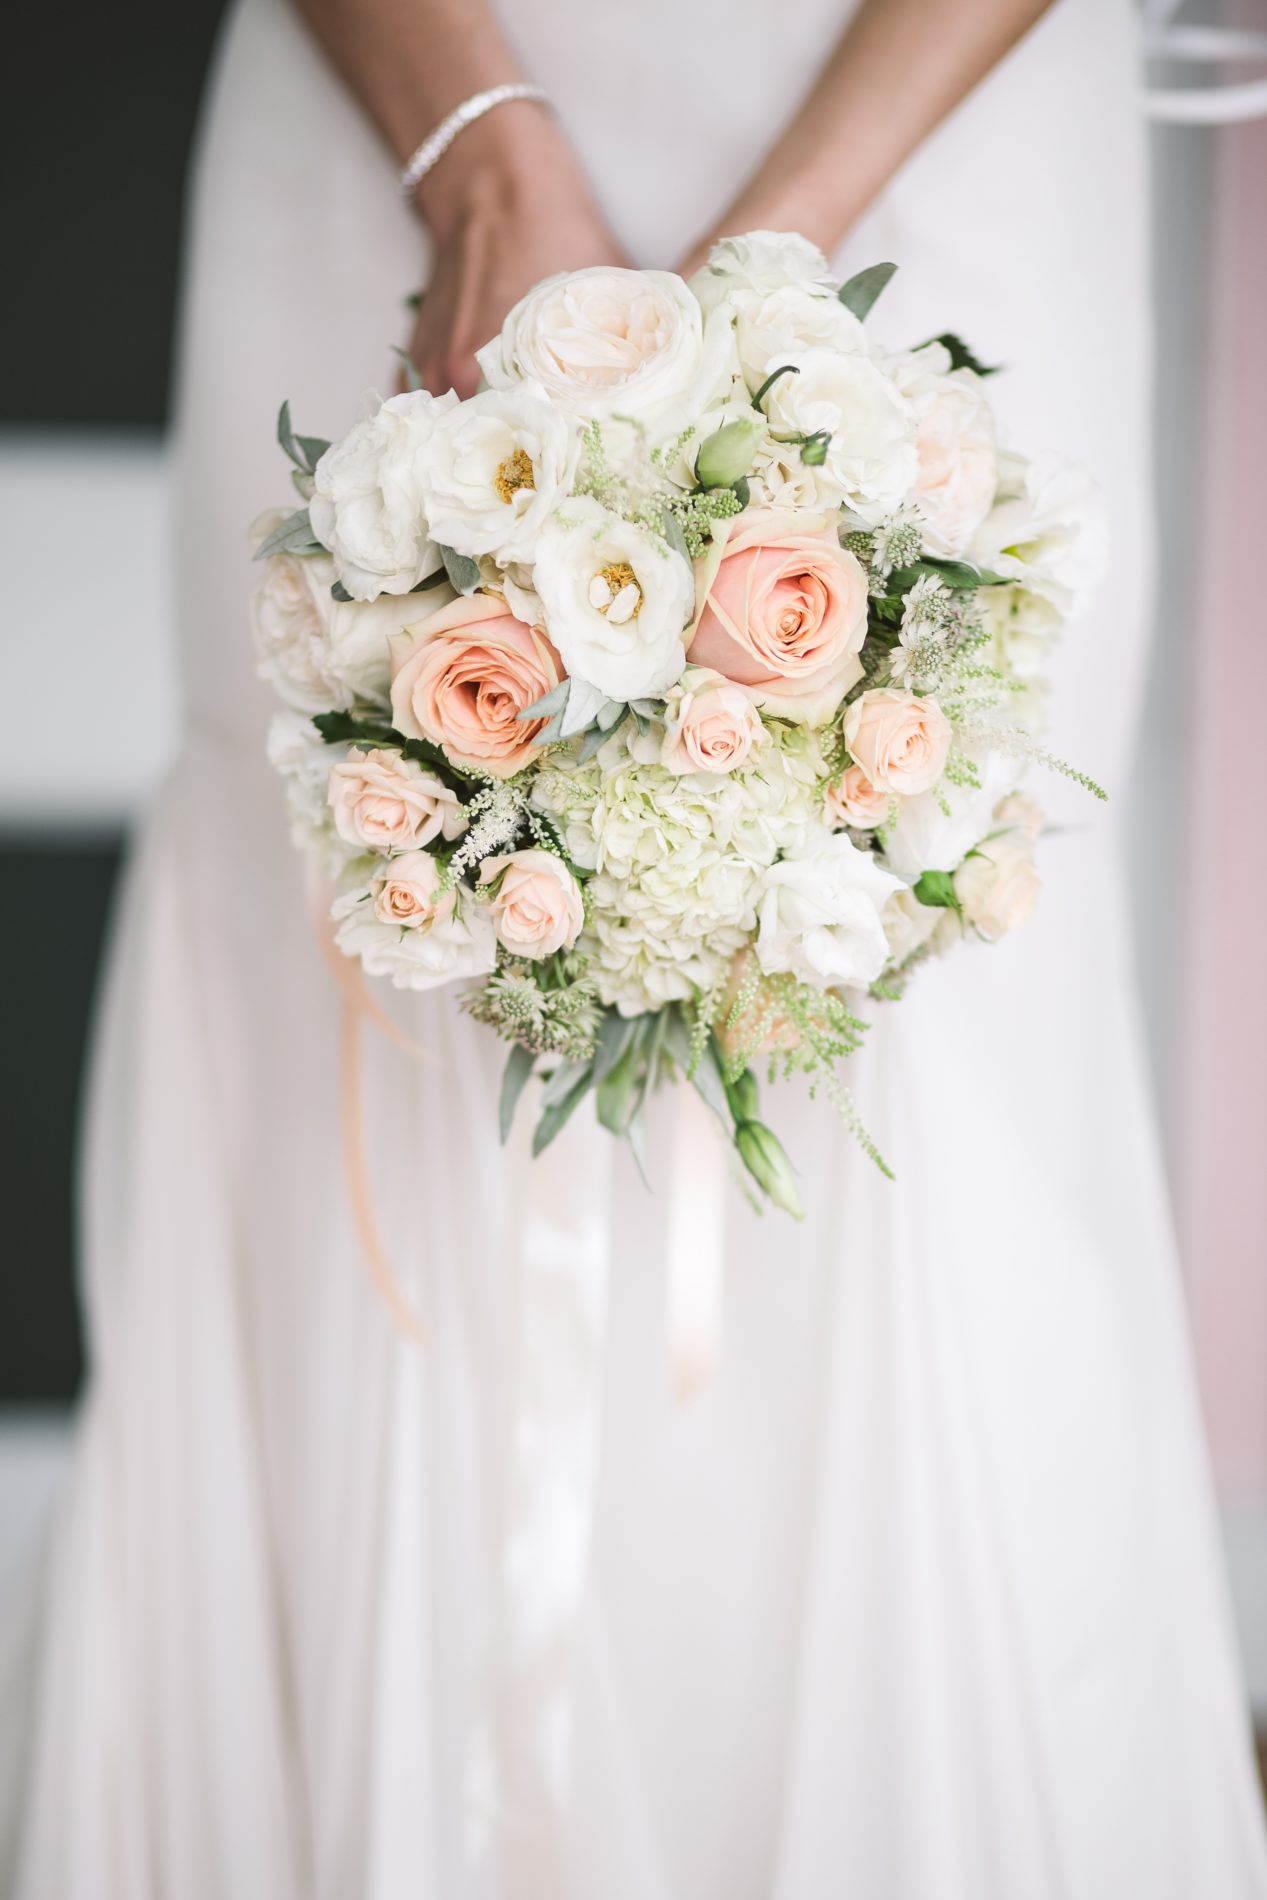 Lancé de bouquet de mariée : origines de la traditions et alternatives